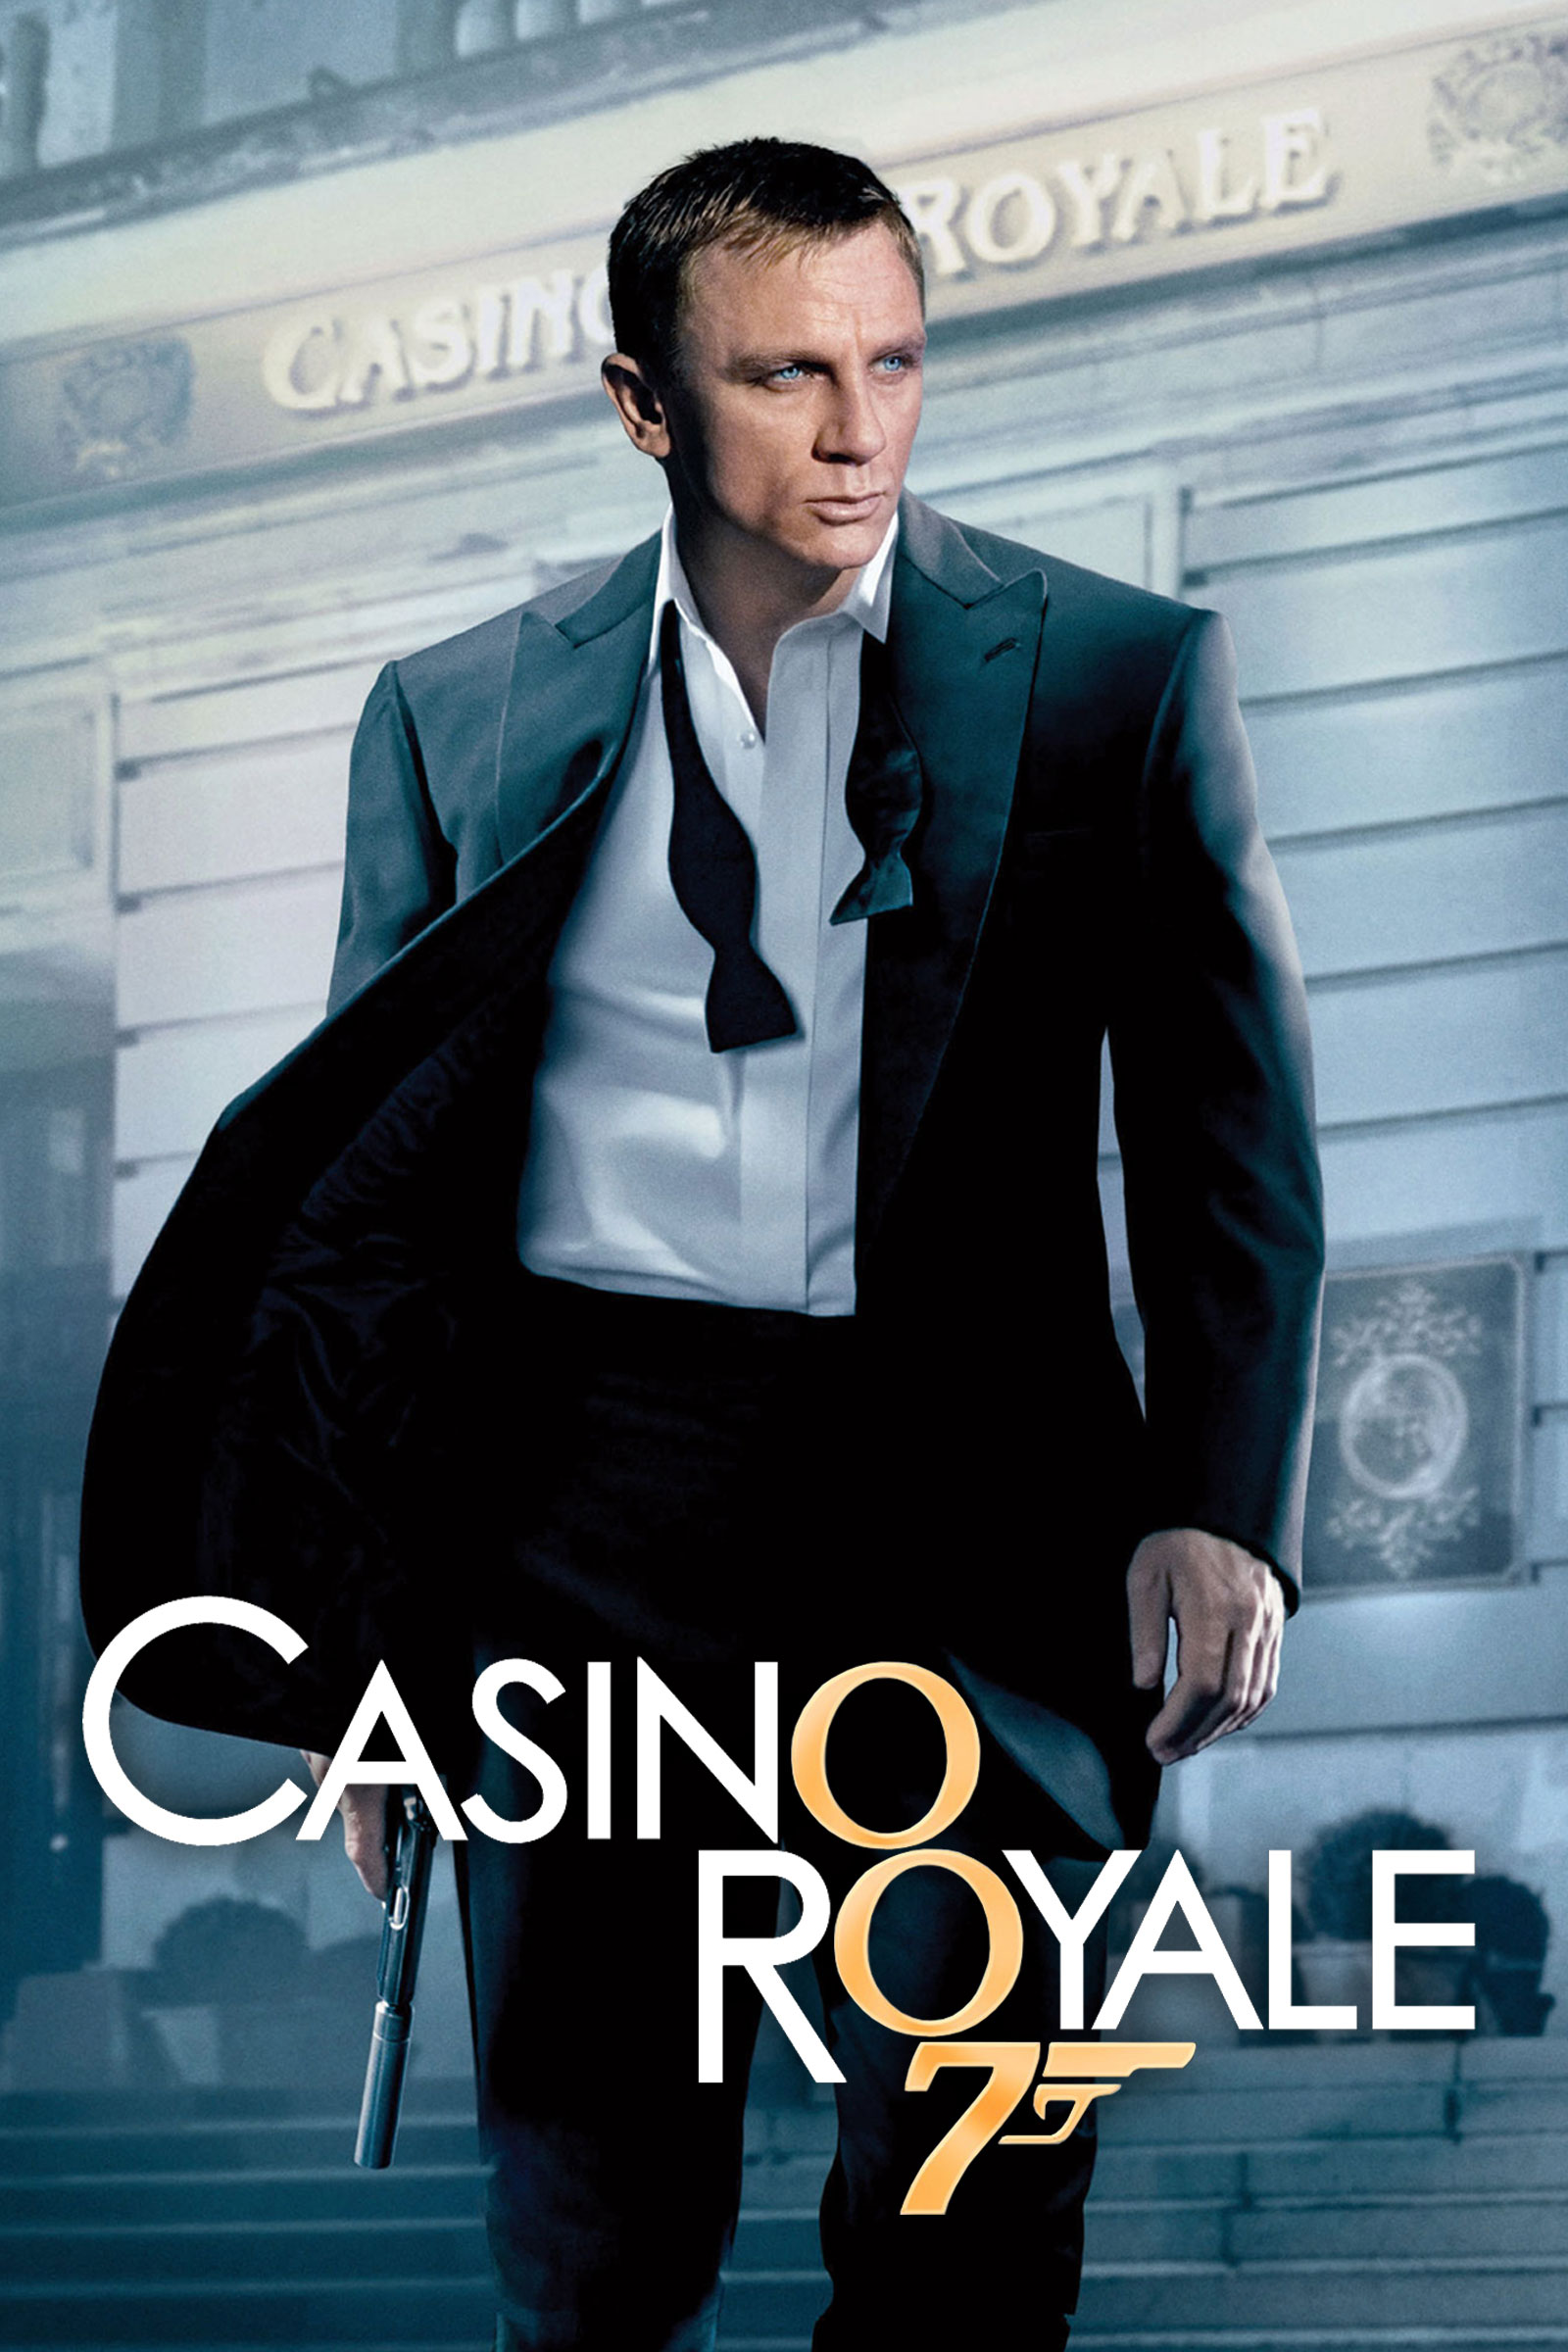 007 casino royale movie